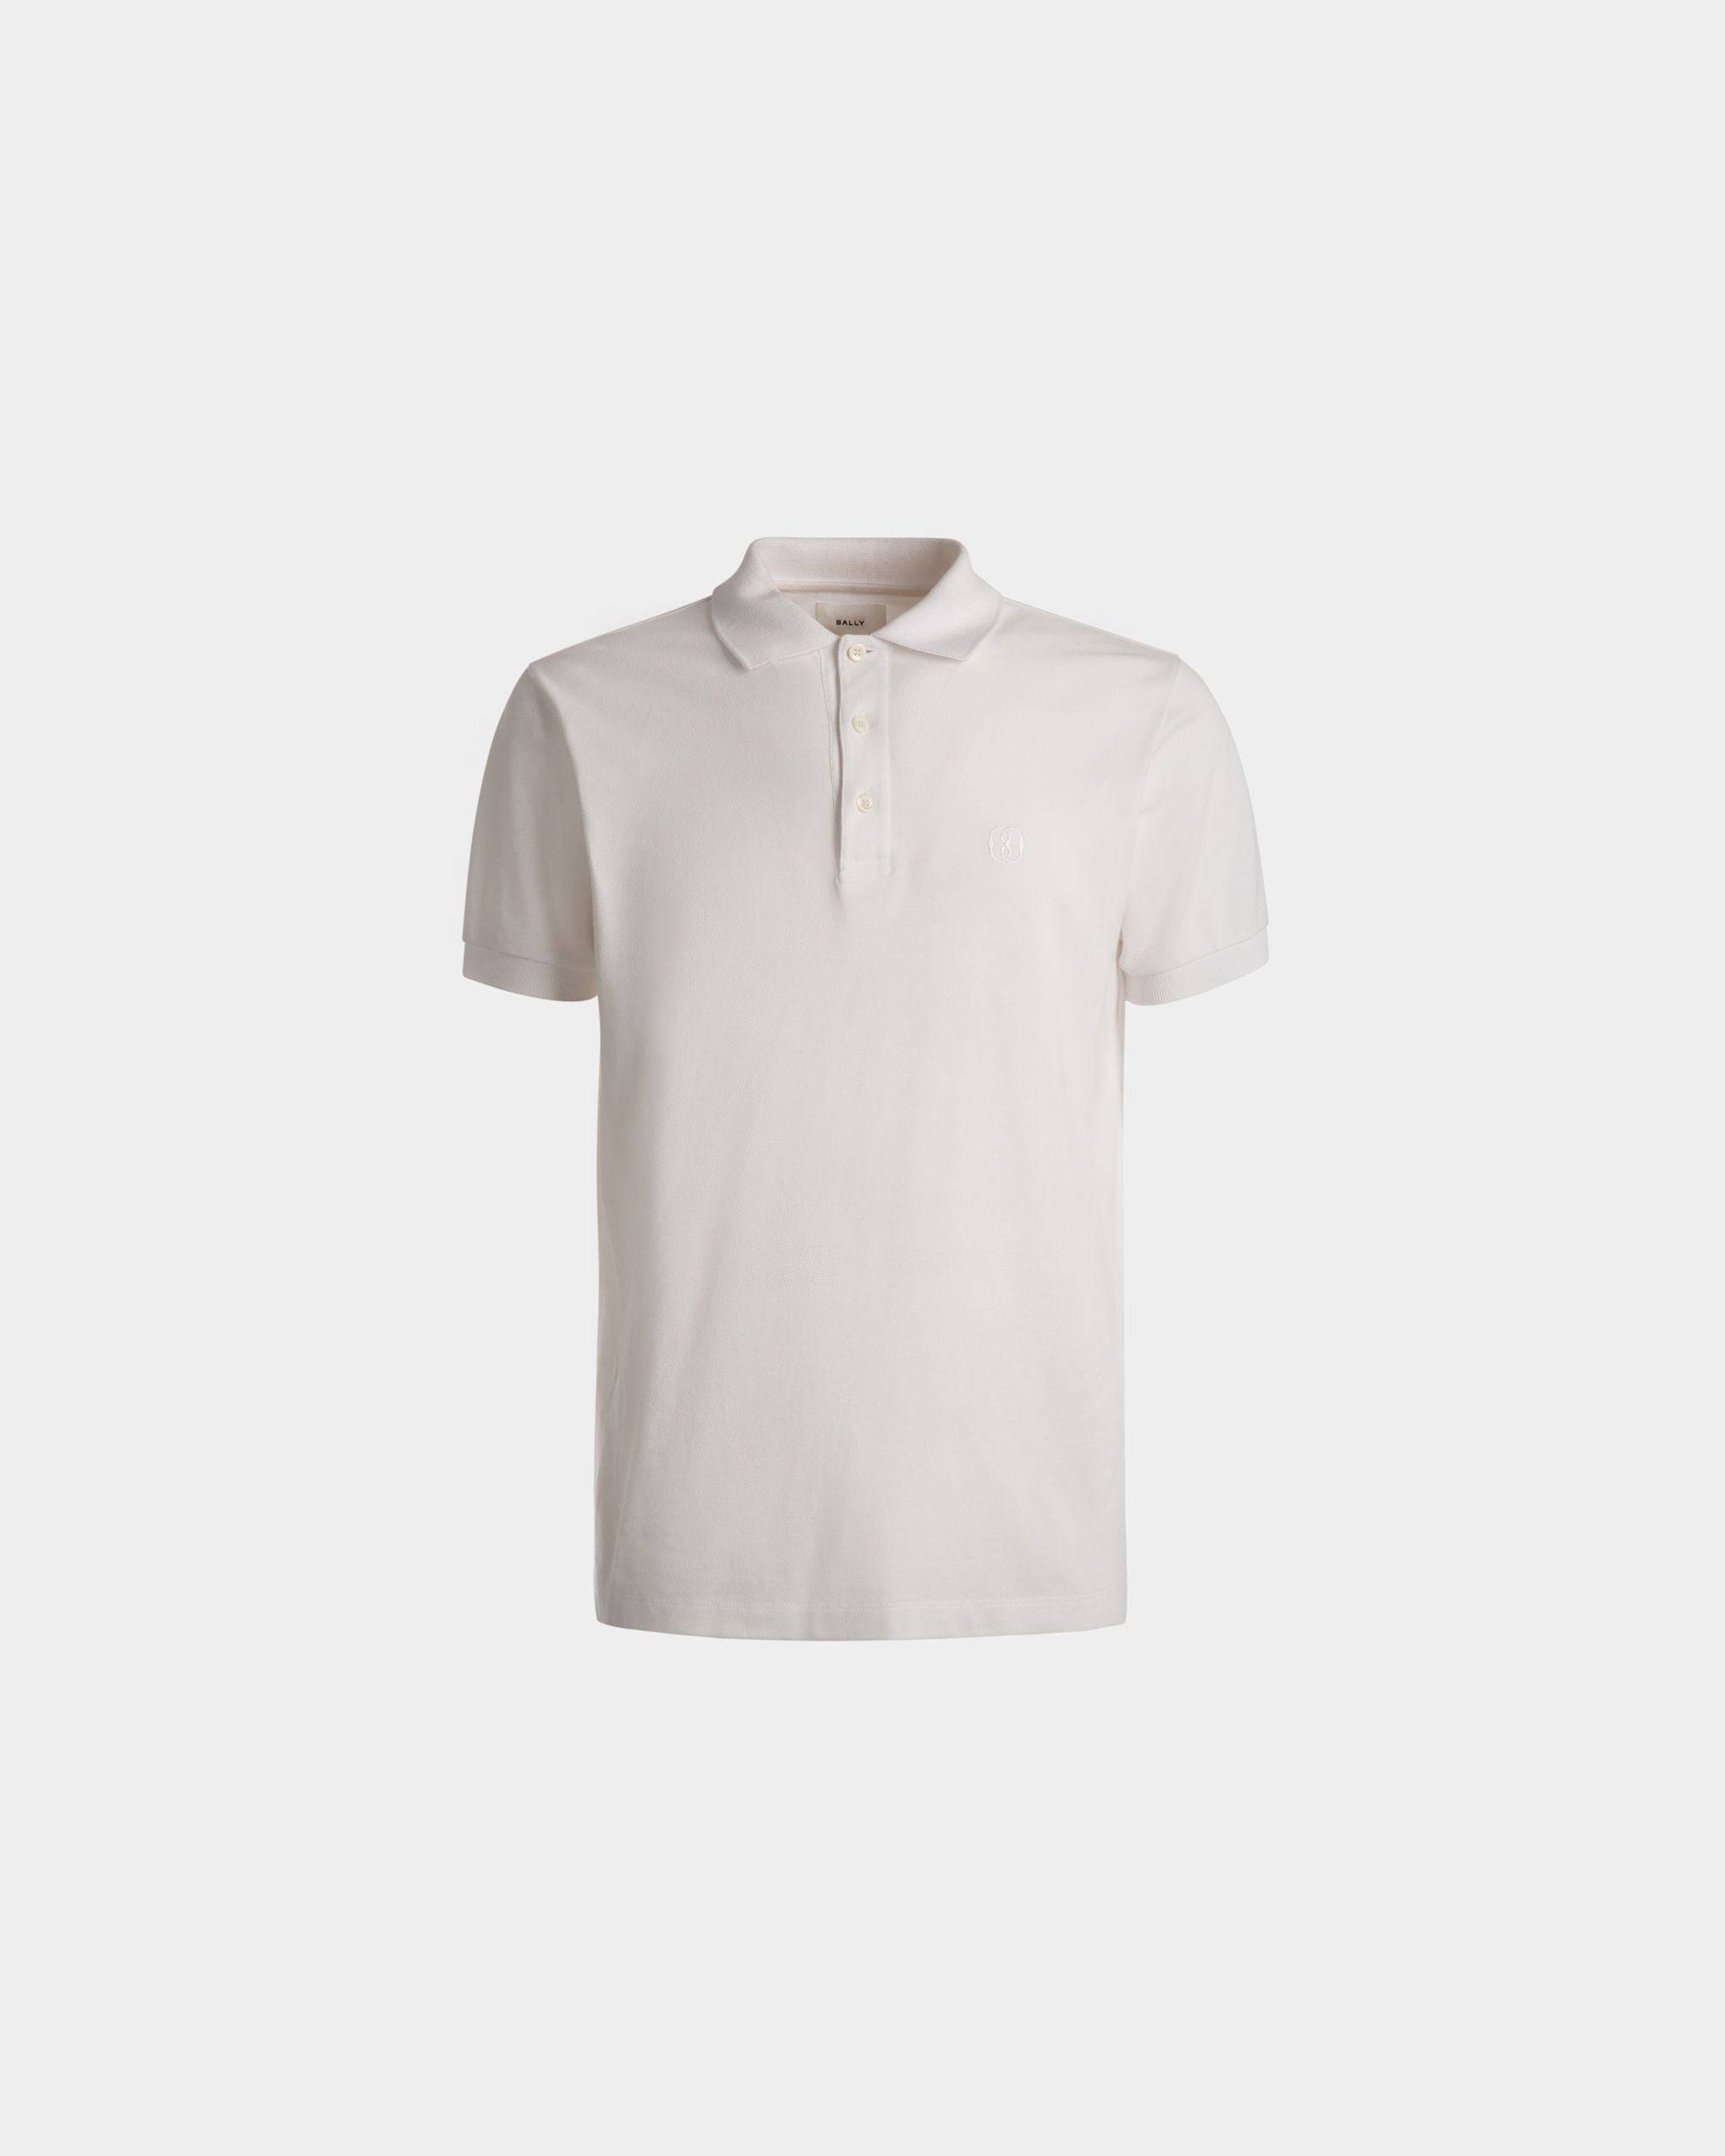 Short Sleeve Polo | Men's Polo | White Cotton | Bally | Still Life Front